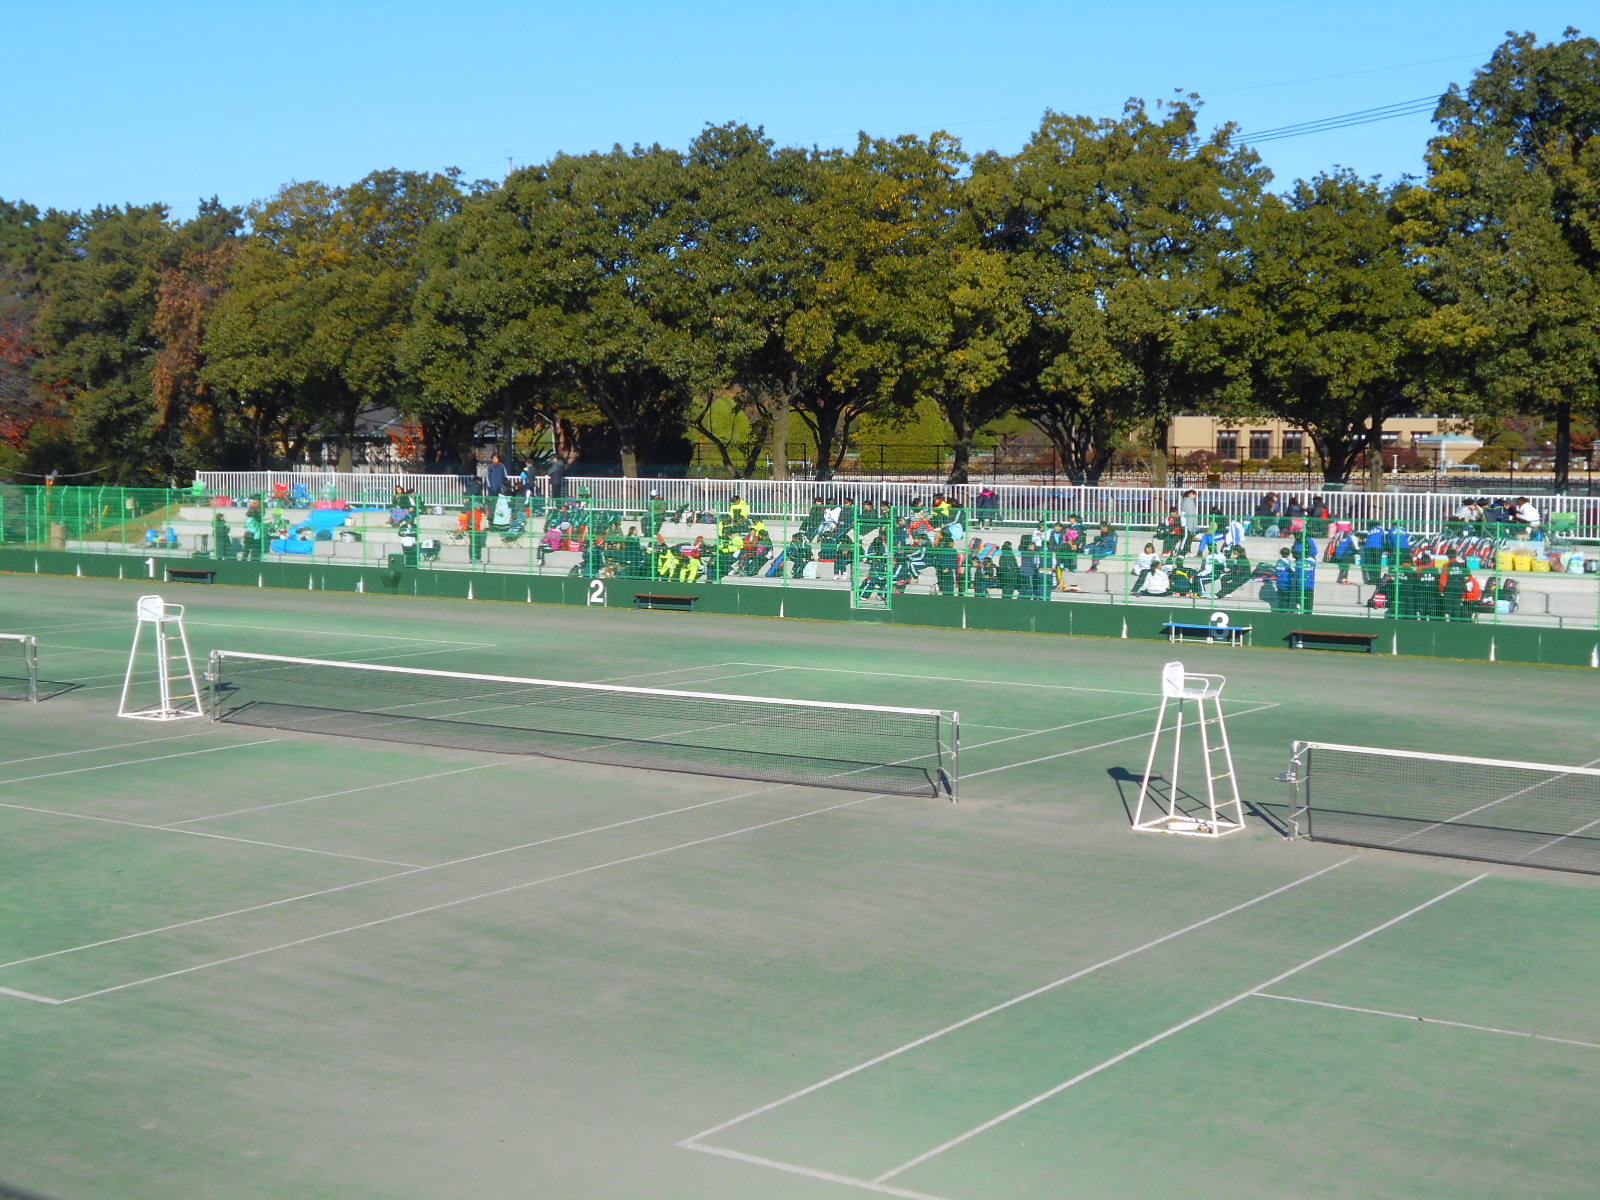 群馬県立敷島公園テニスコートの観客席